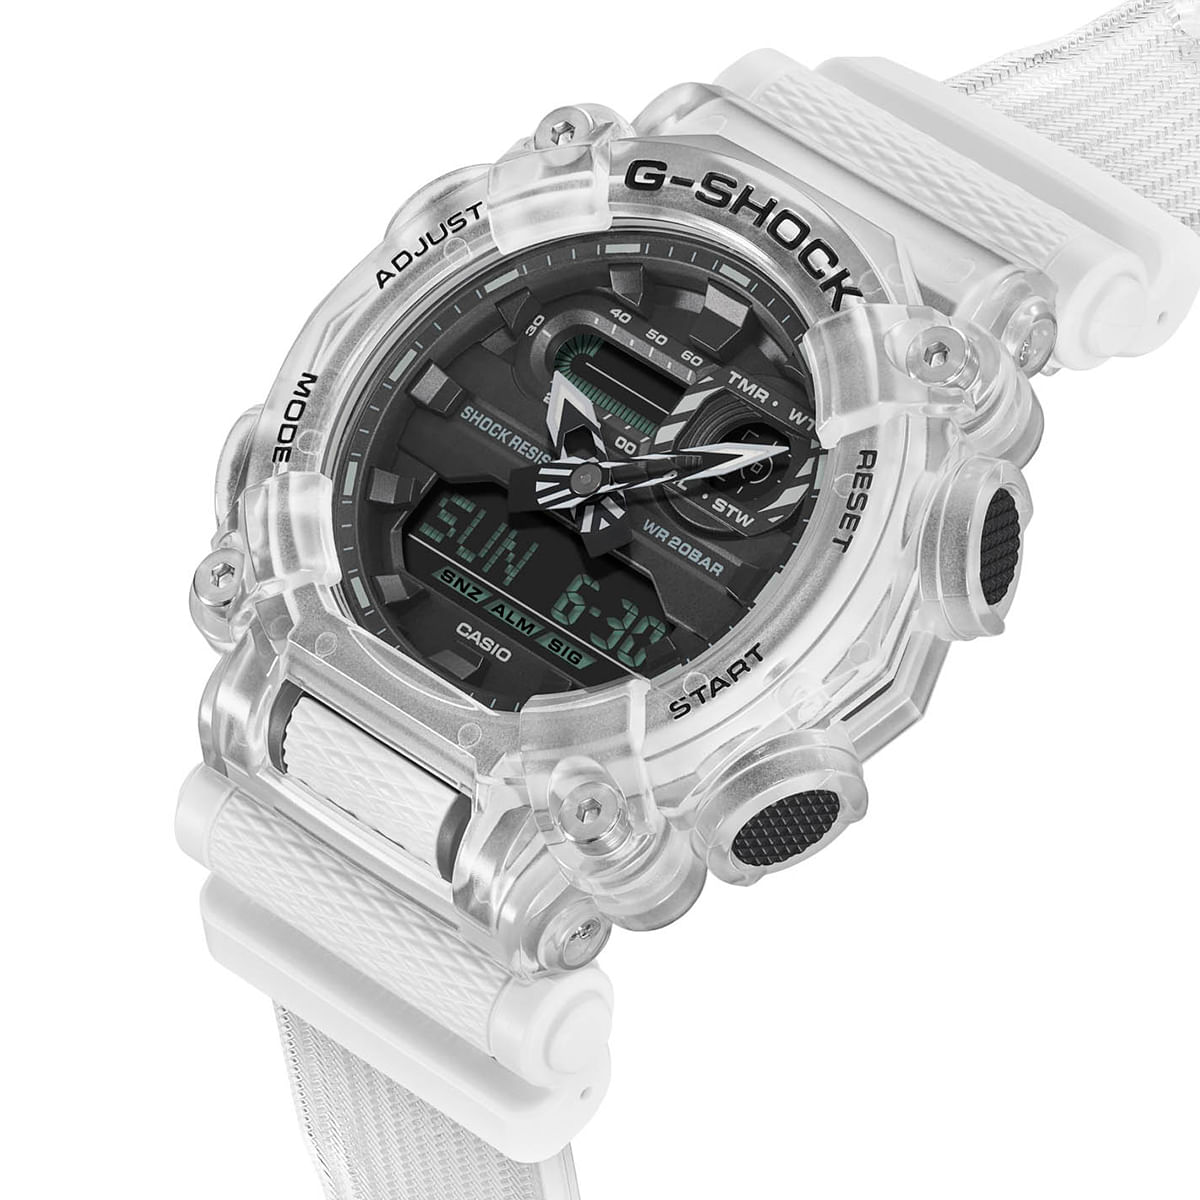 Reloj G-SHOCK GA-900SKL-7A Resina Hombre Transparente - Btime